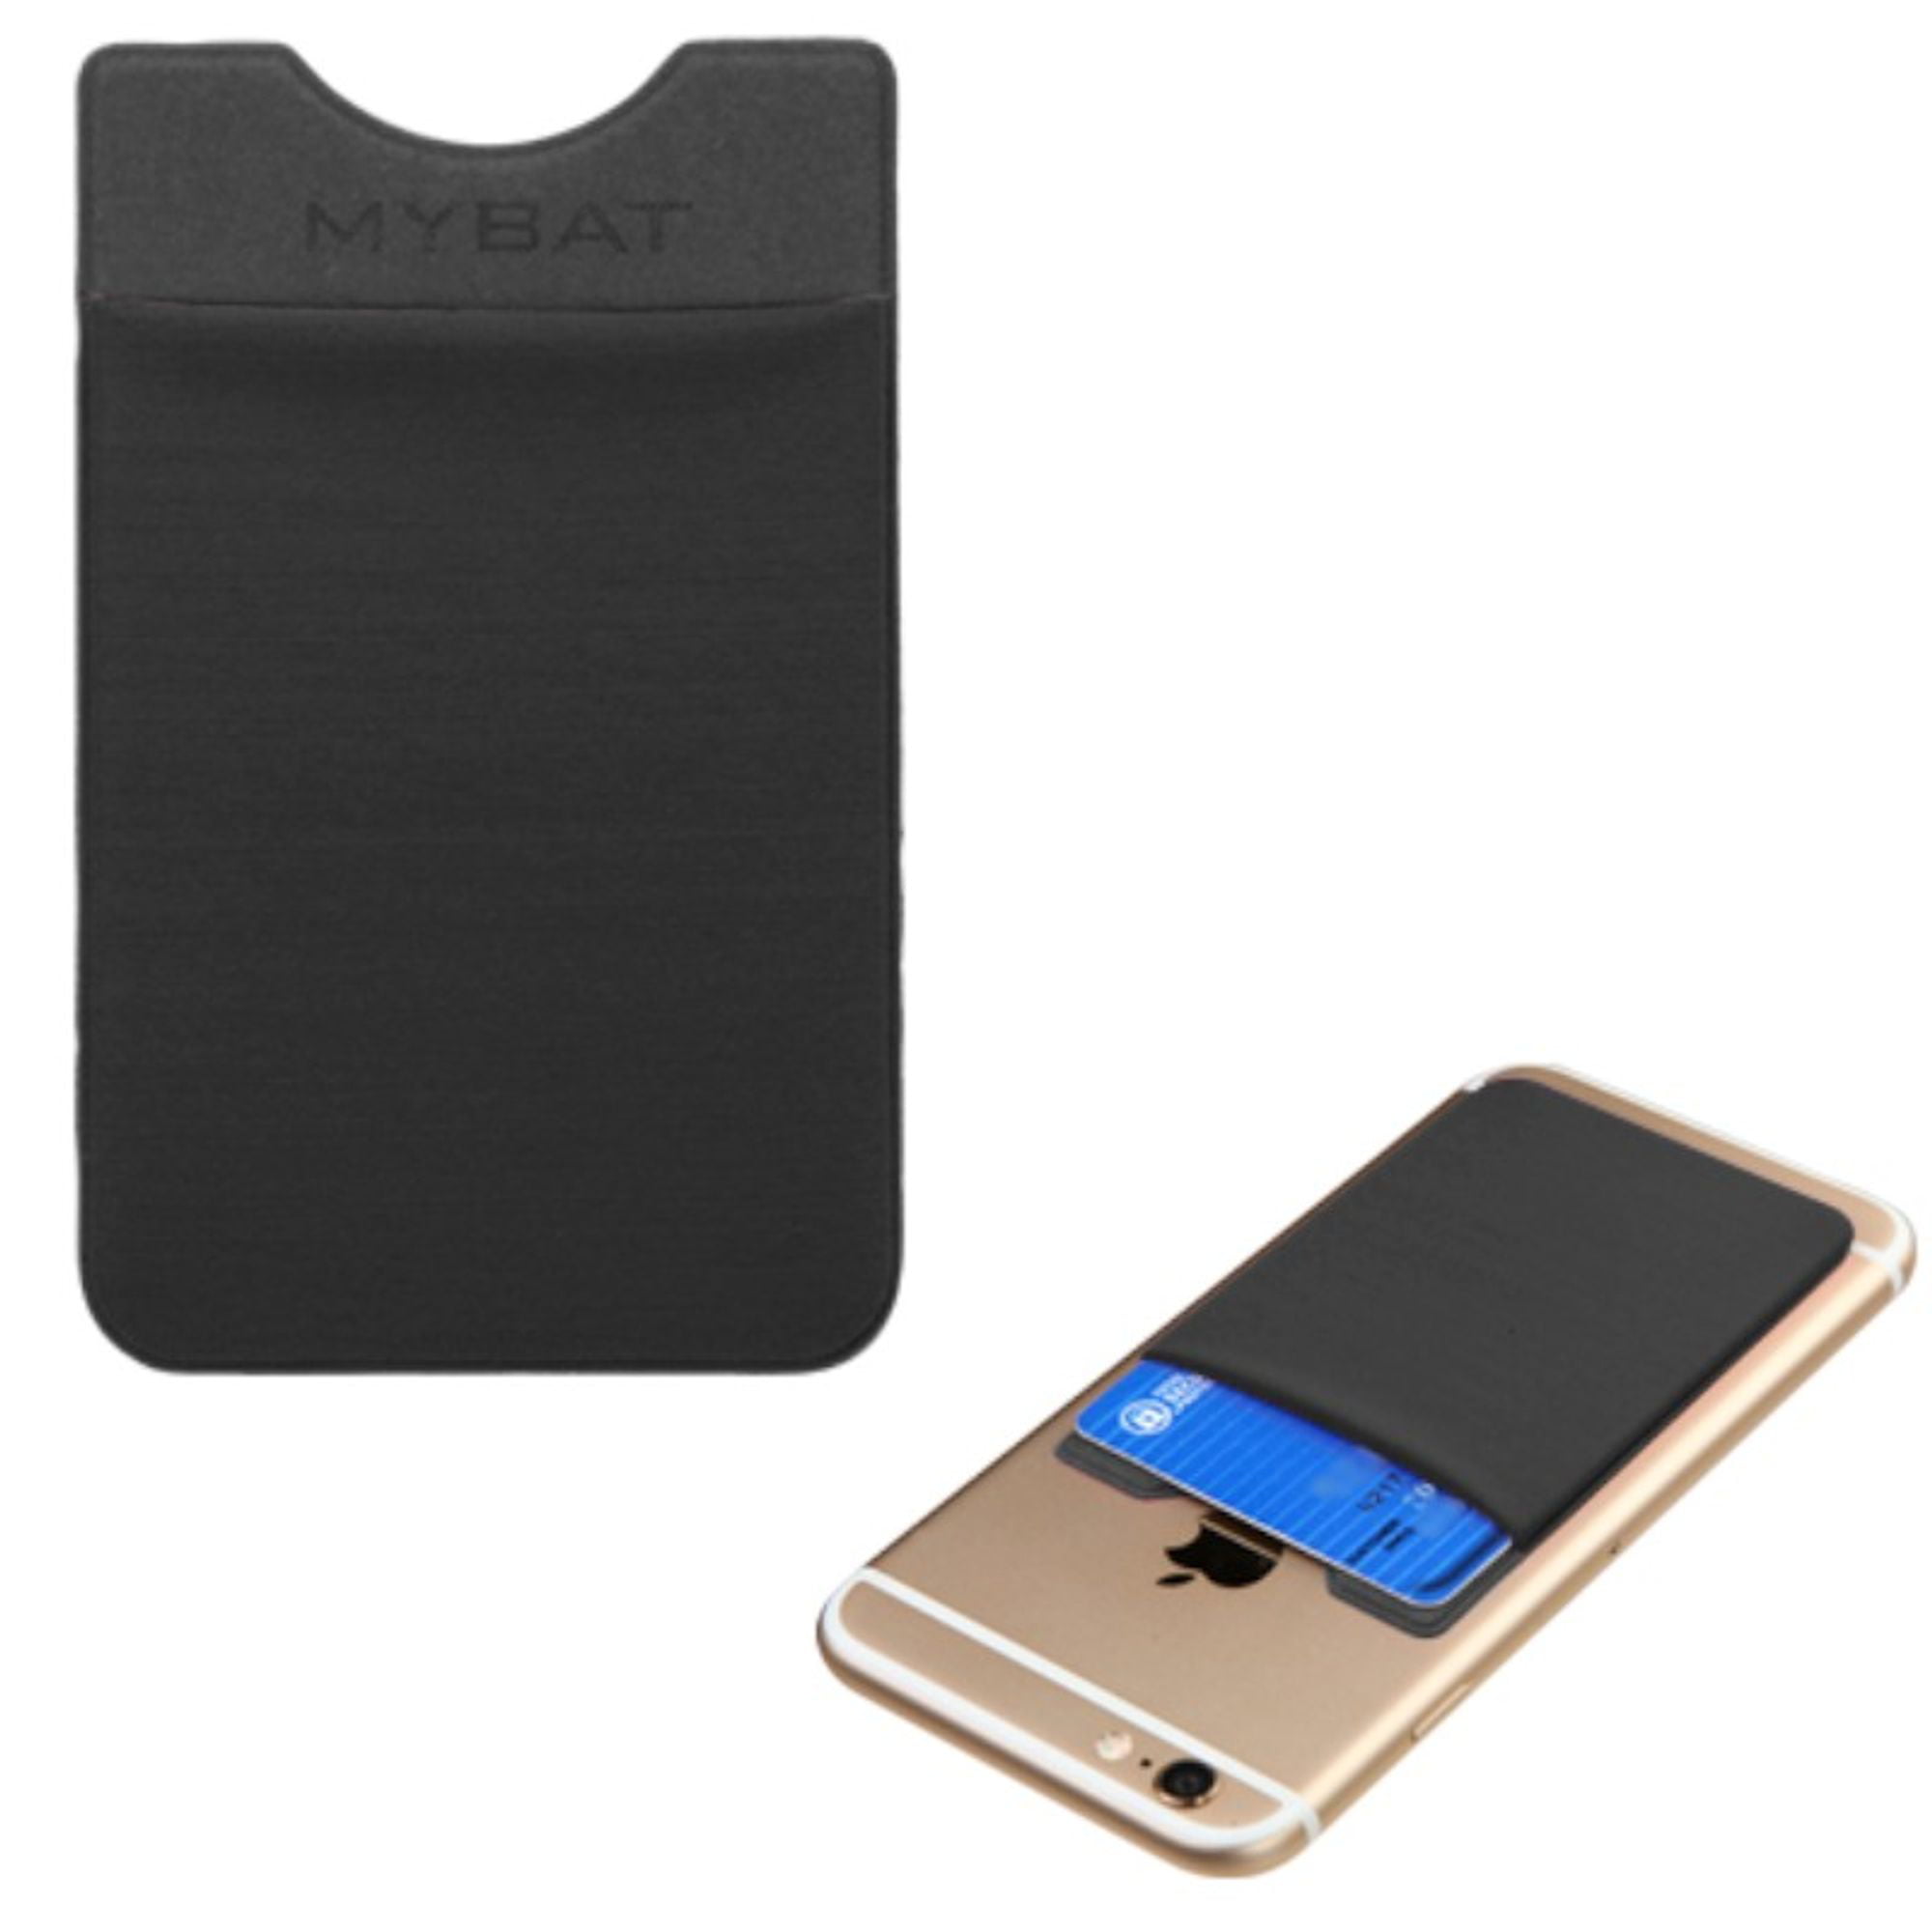 card holder 2021 plastic cards pocket pocket card holder card case holder pocket wallet case for credit cards Card case card pocket